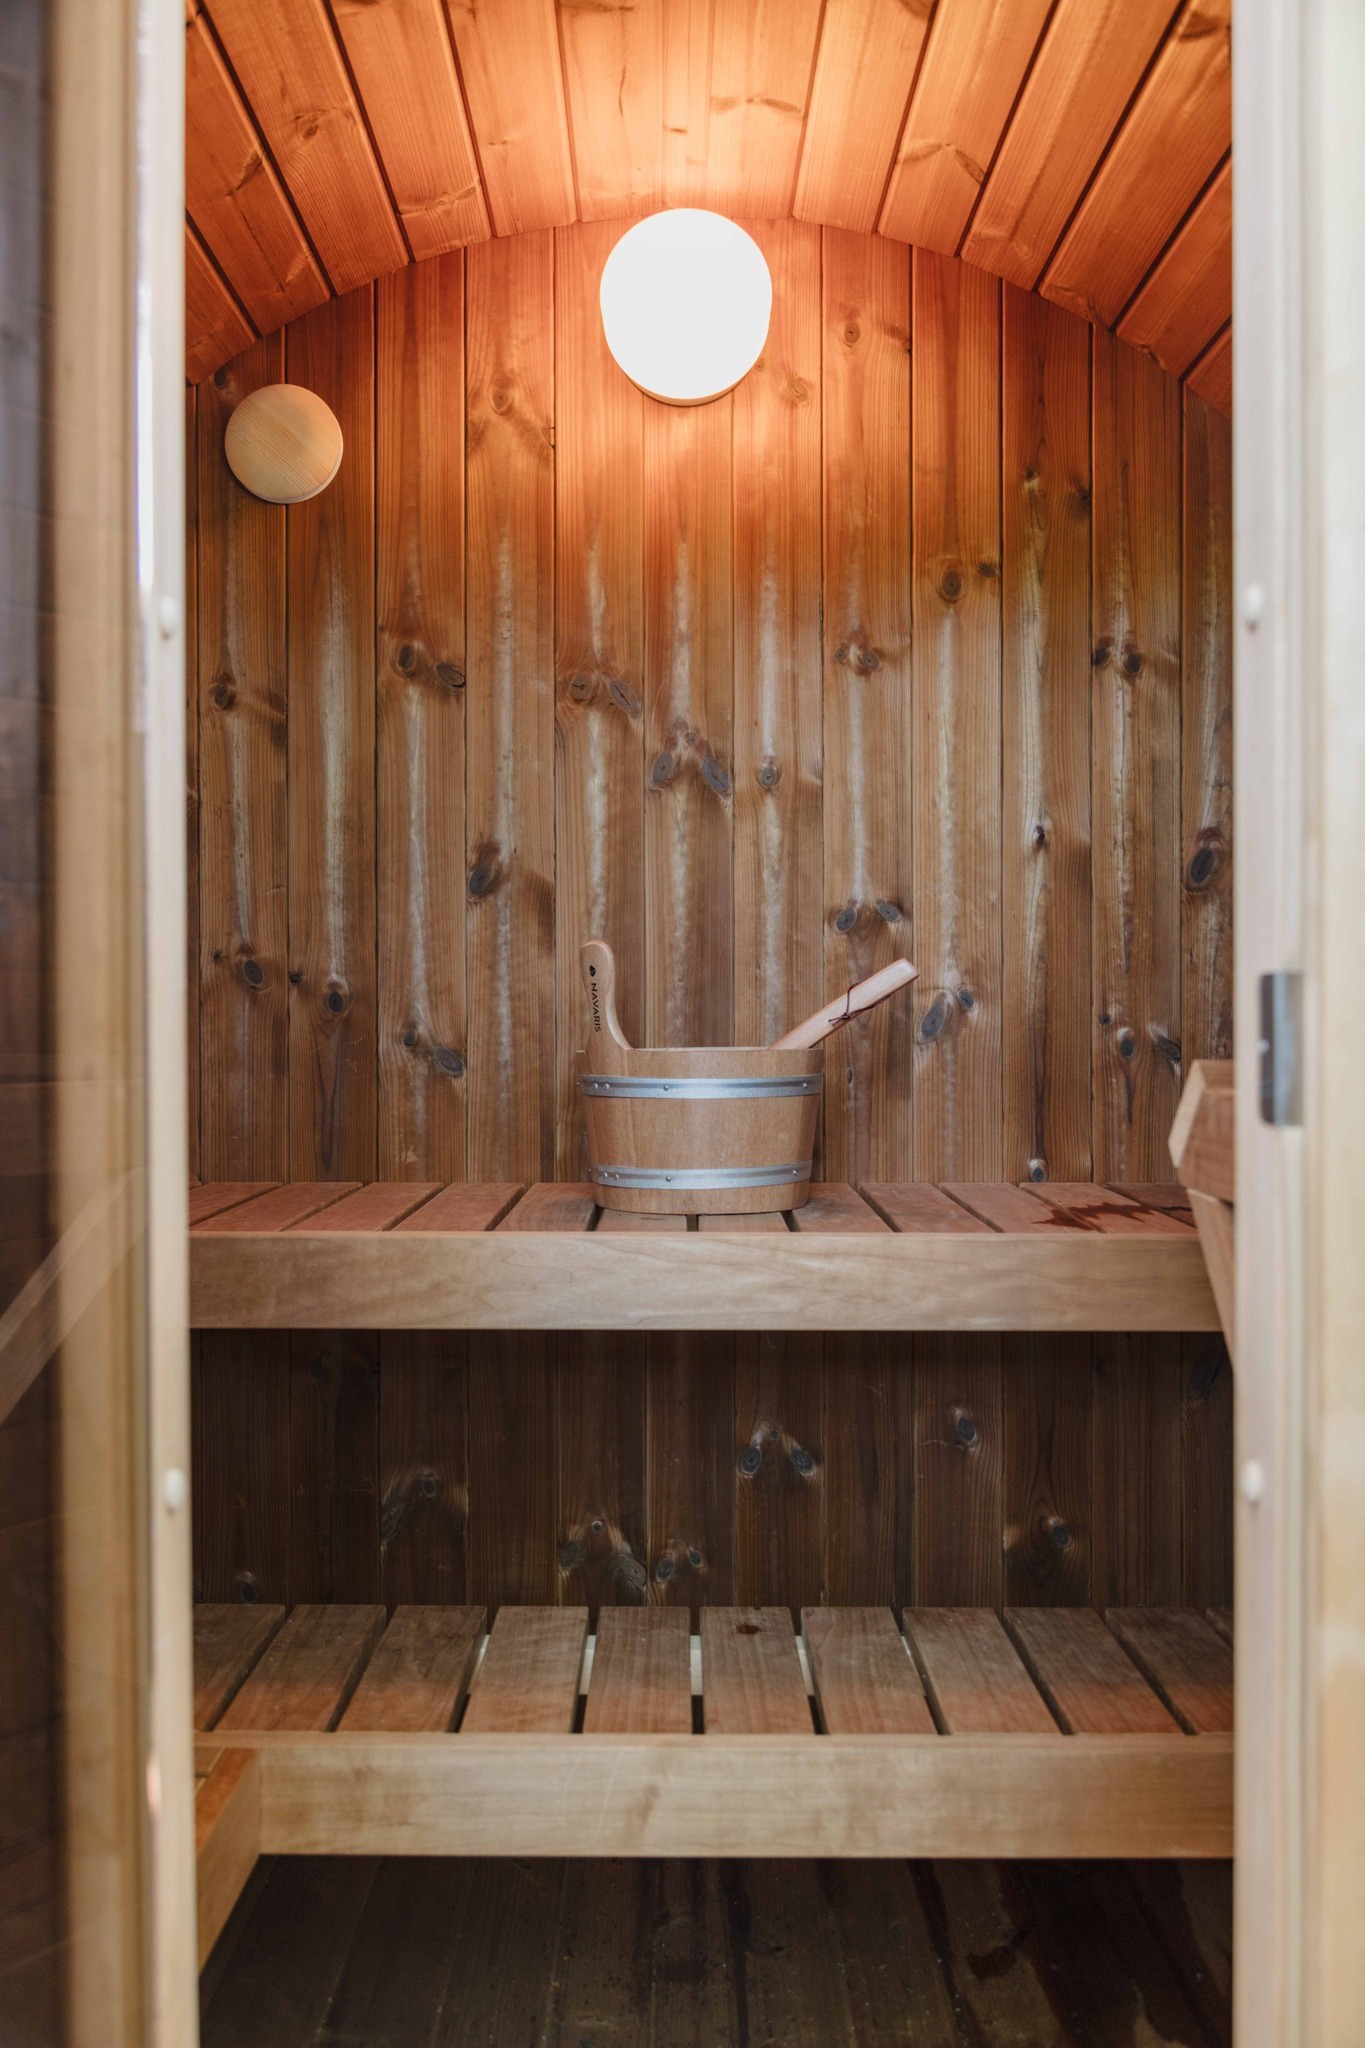 北欧サウナ と露天風呂を満喫!ル・クルーゼの食器とお鍋で統一された非日常空間